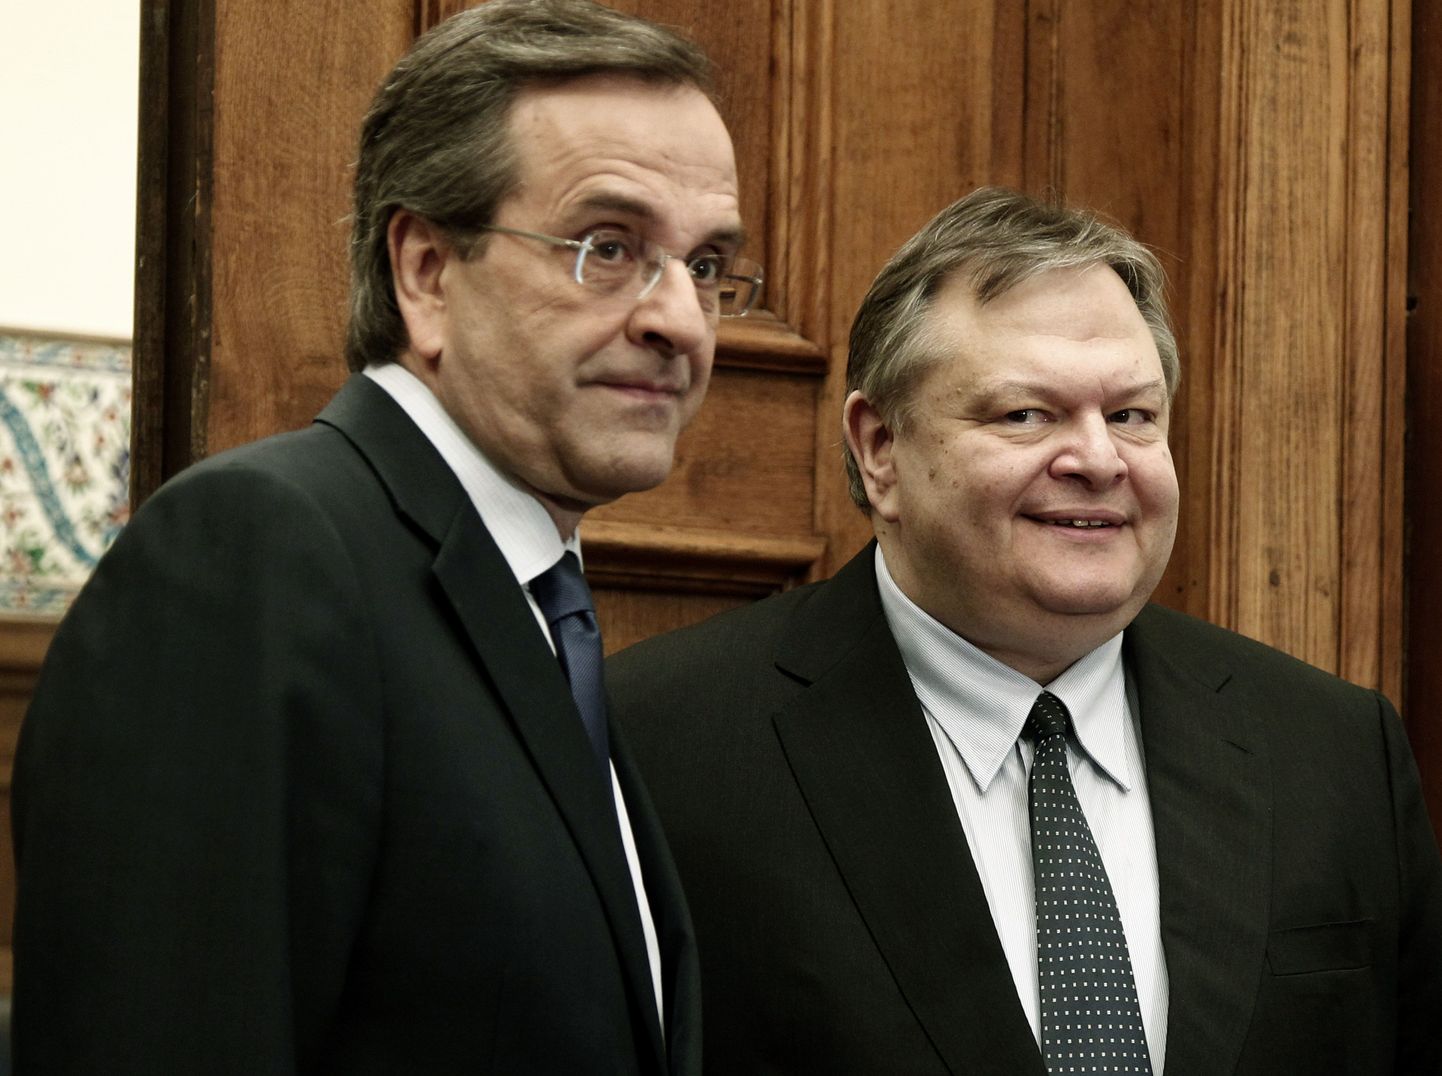 Kreeka valimised võitnud konservatiivse Uue Demokraatia juht Antonis Samaras (vasakul) ja sotsialistide liider Evangelos Venizelos.